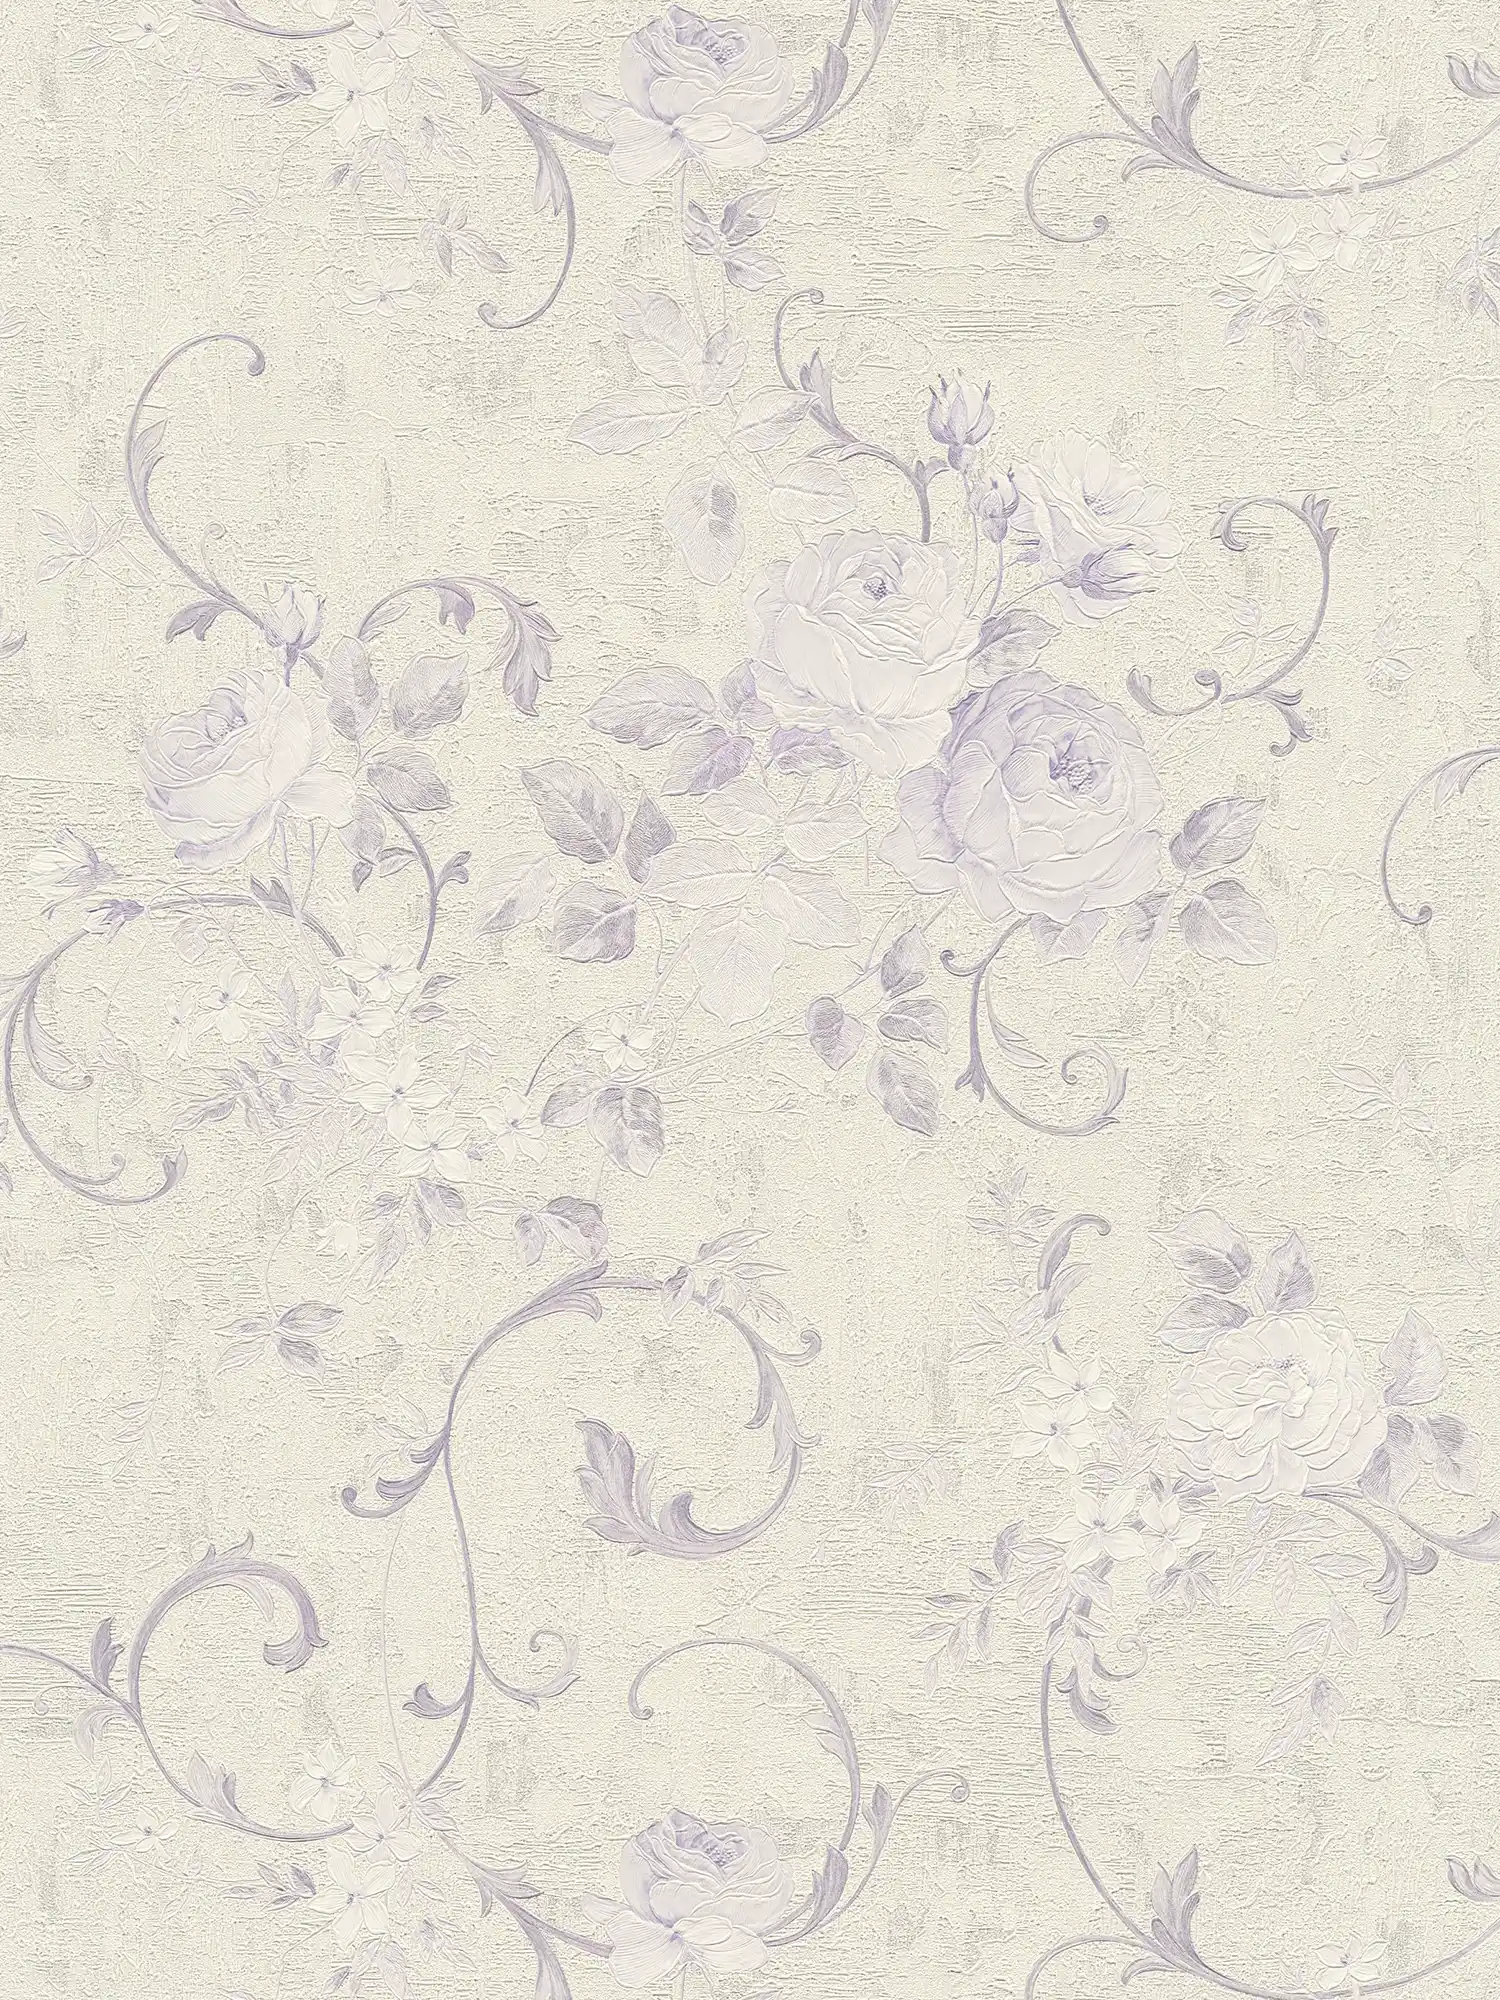 Papier peint motifs de roses & feuillages - crème, métallique, lilas
